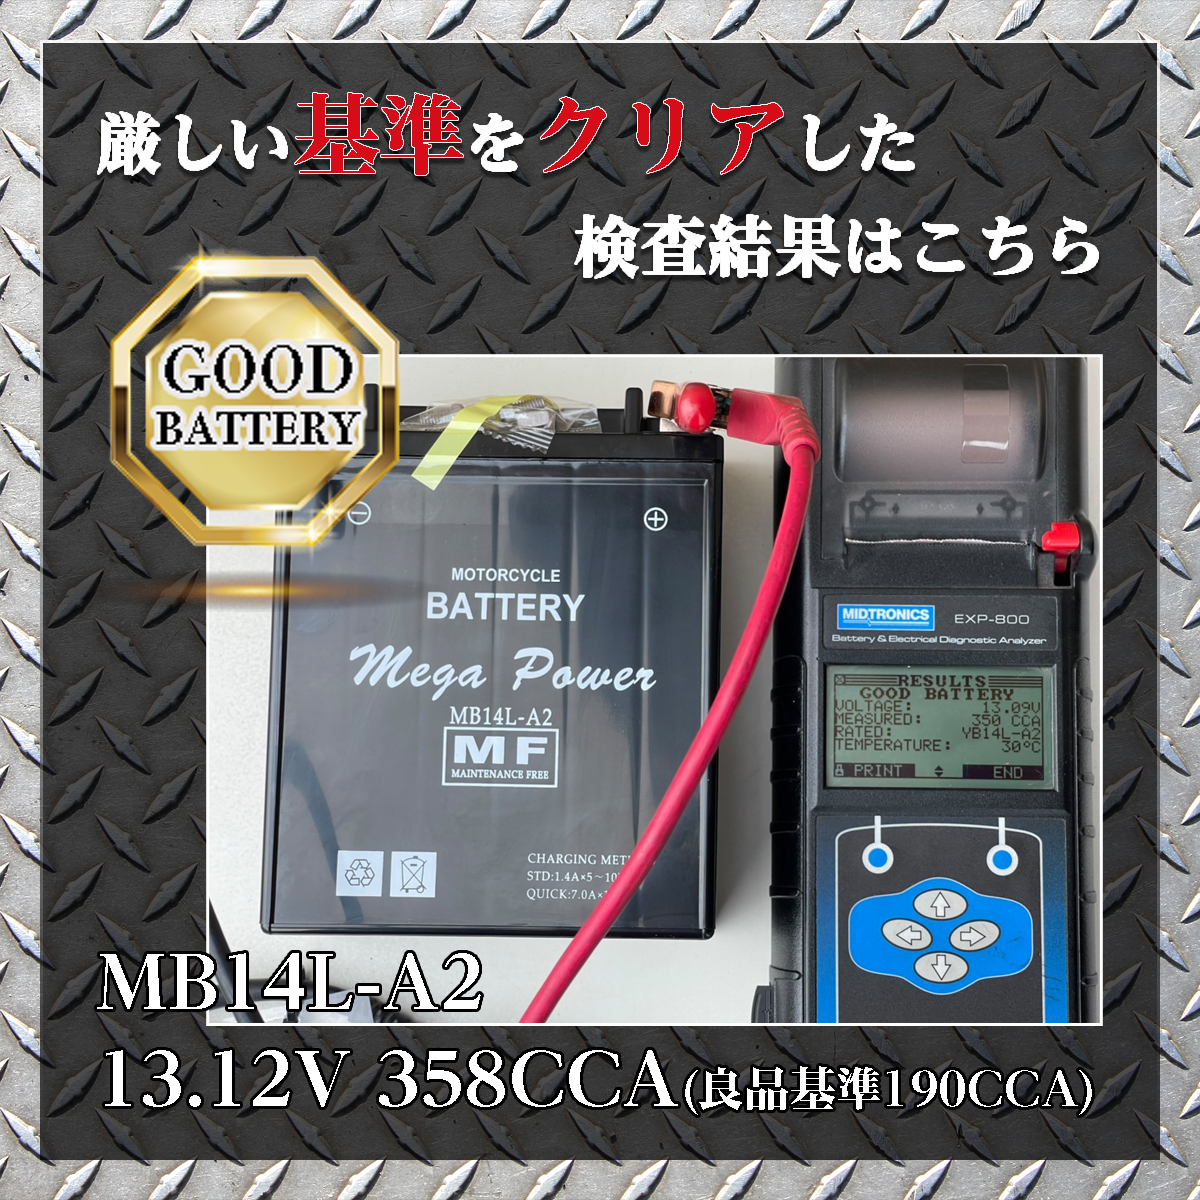 国産基準 純正基準 良品基準 クリア 日本基準 電圧 容量 CCA アンペア 10時間率